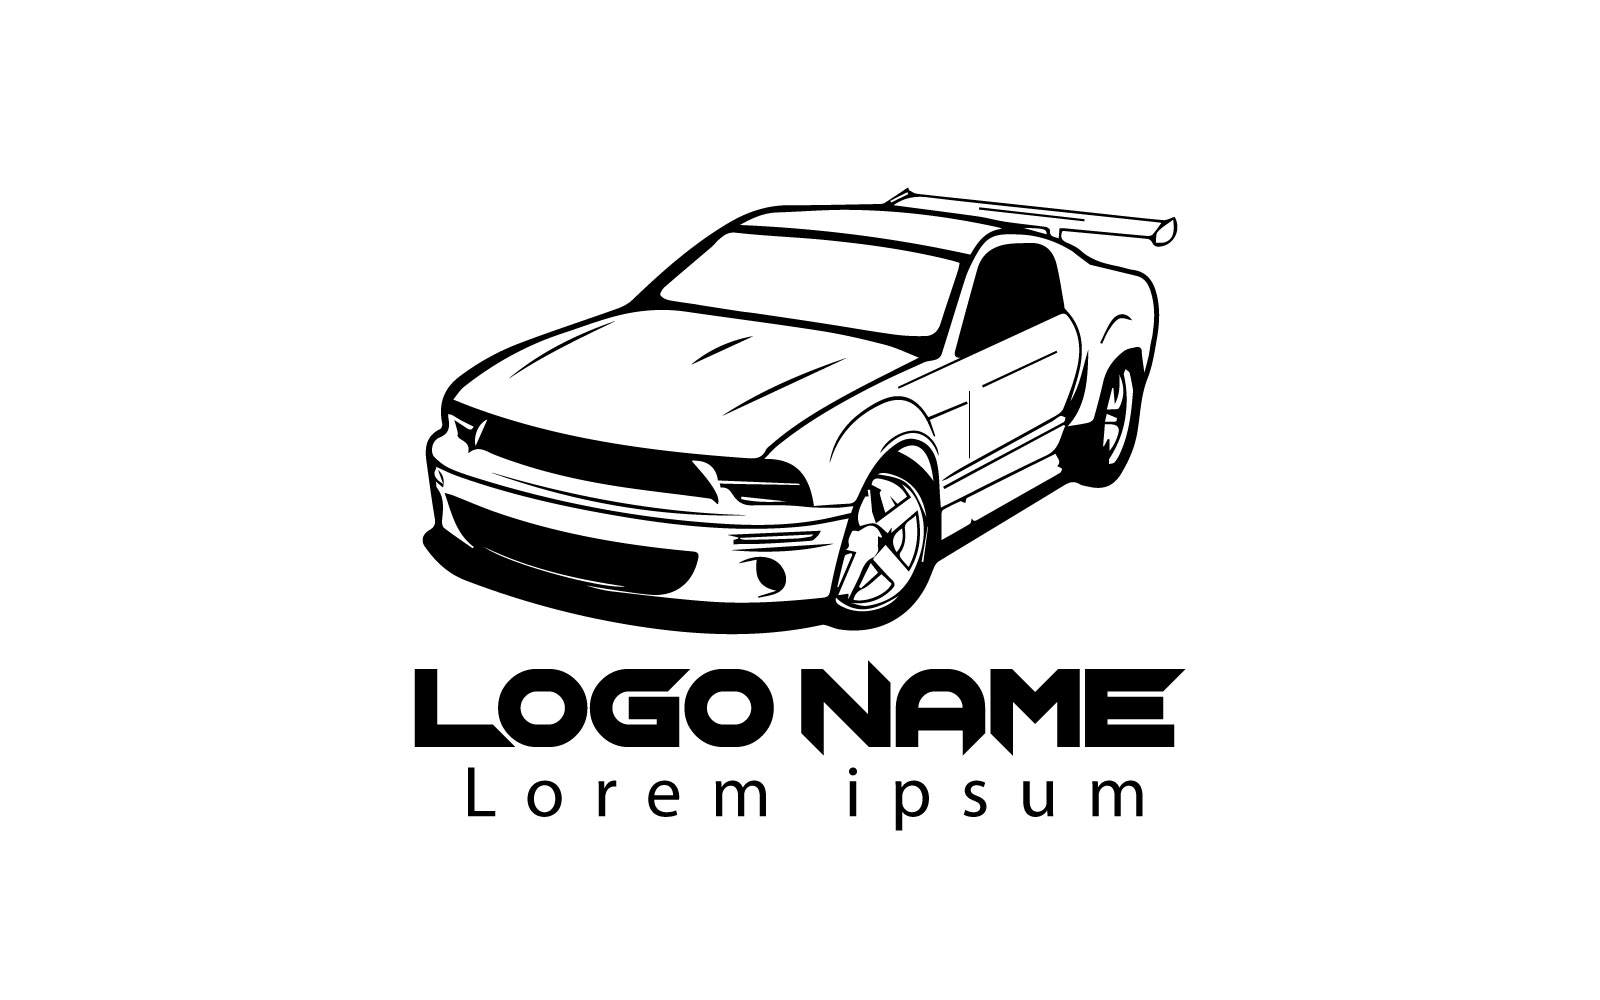 Unique And Creative Car Logo Design